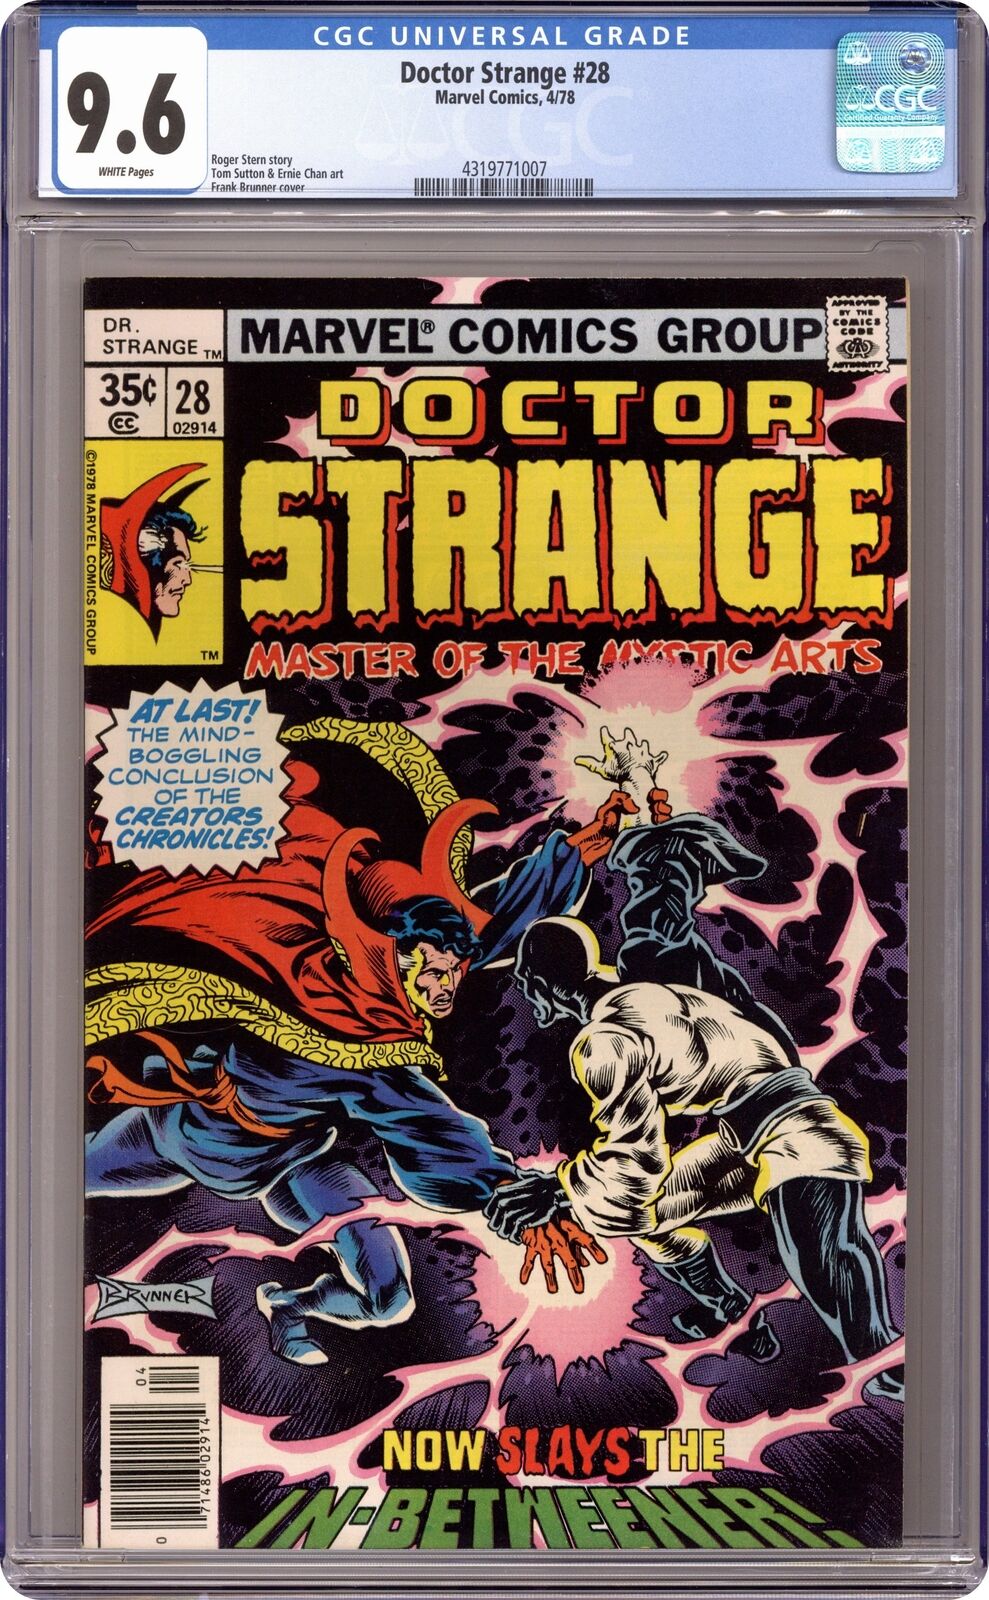 Doctor Strange #28 CGC 9.6 1978 4319771007